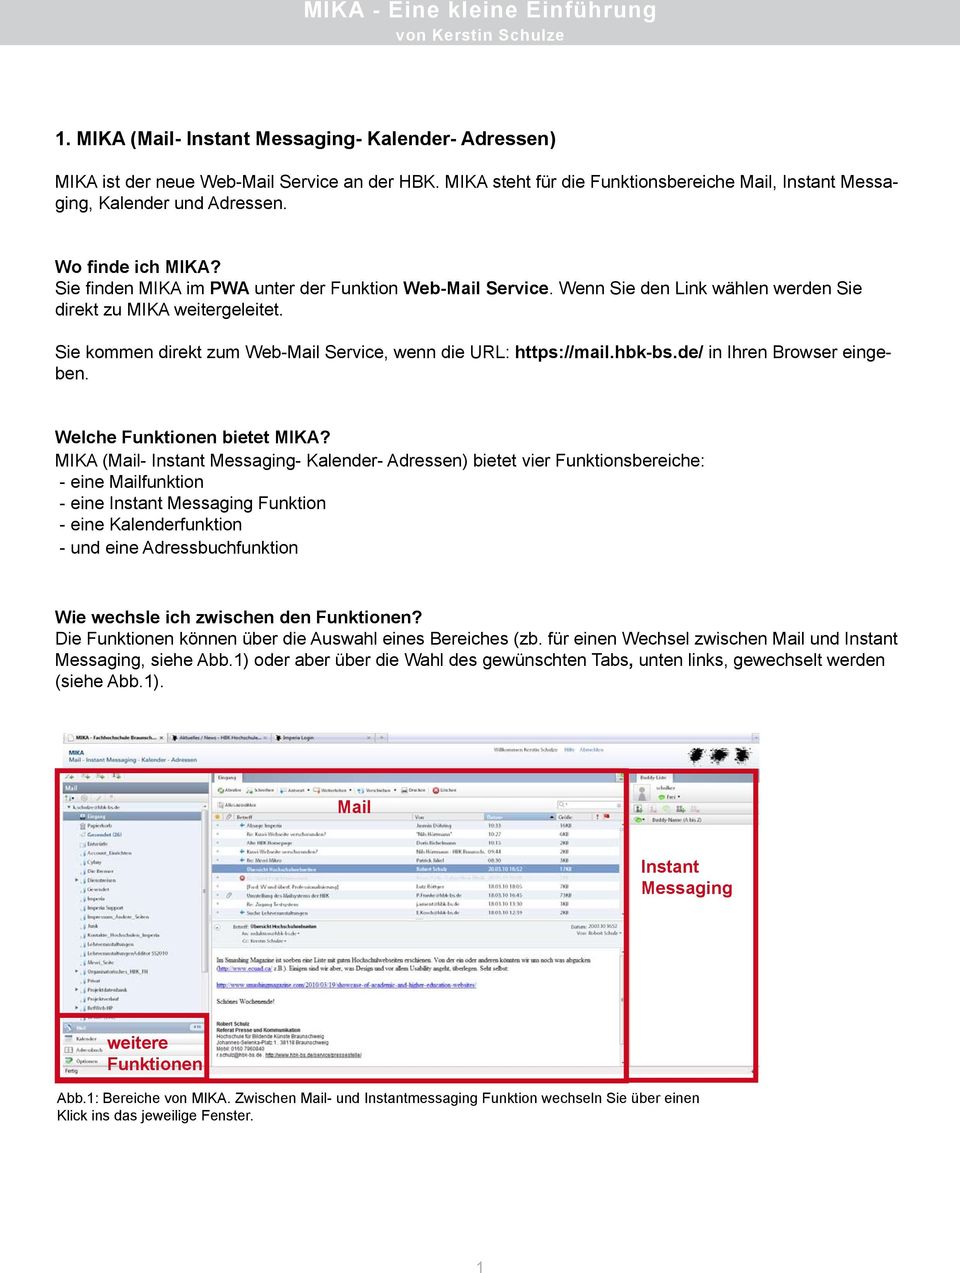 Wenn Sie den Link wählen werden Sie direkt zu MIKA weitergeleitet. Sie kommen direkt zum Web-Mail Service, wenn die URL: https://mail.hbk-bs.de/ in Ihren Browser eingeben.